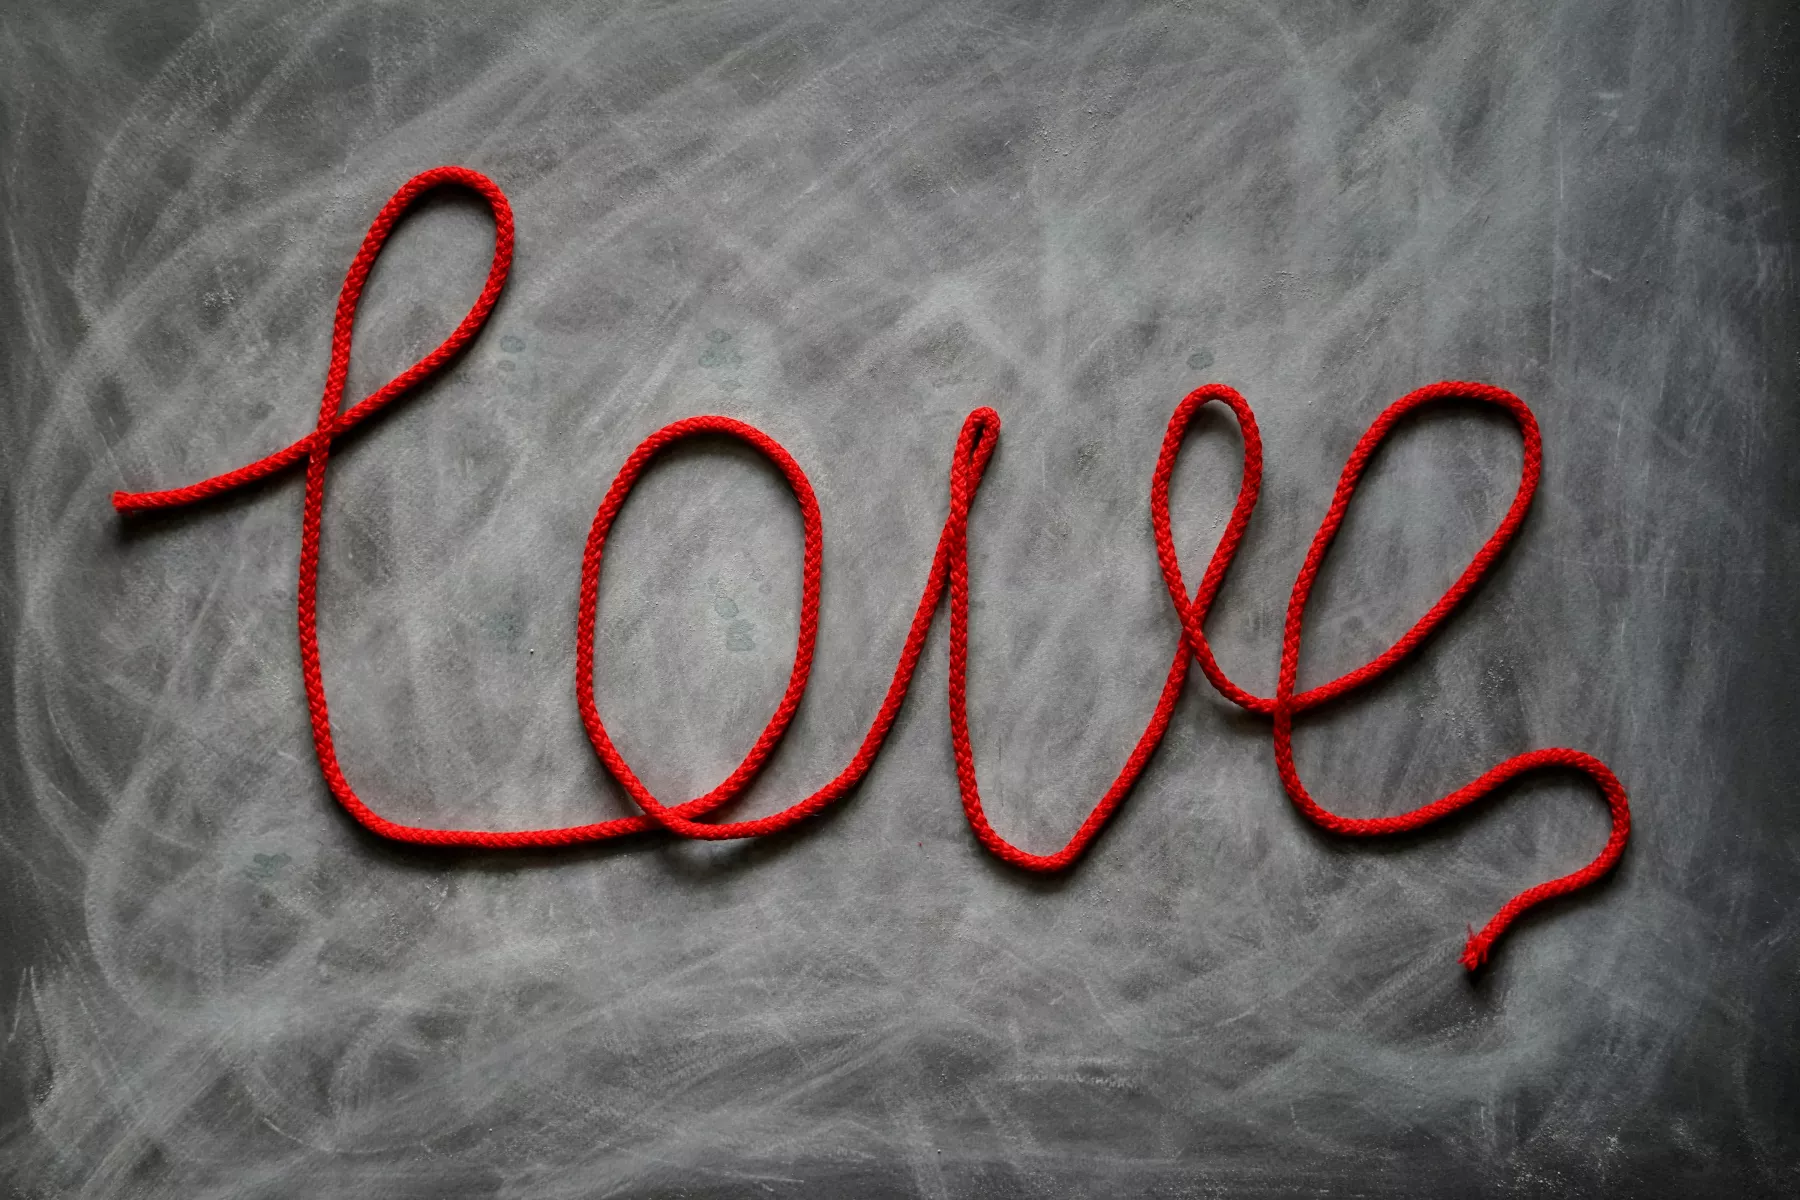 Roter Faden als "Love" Schriftzug